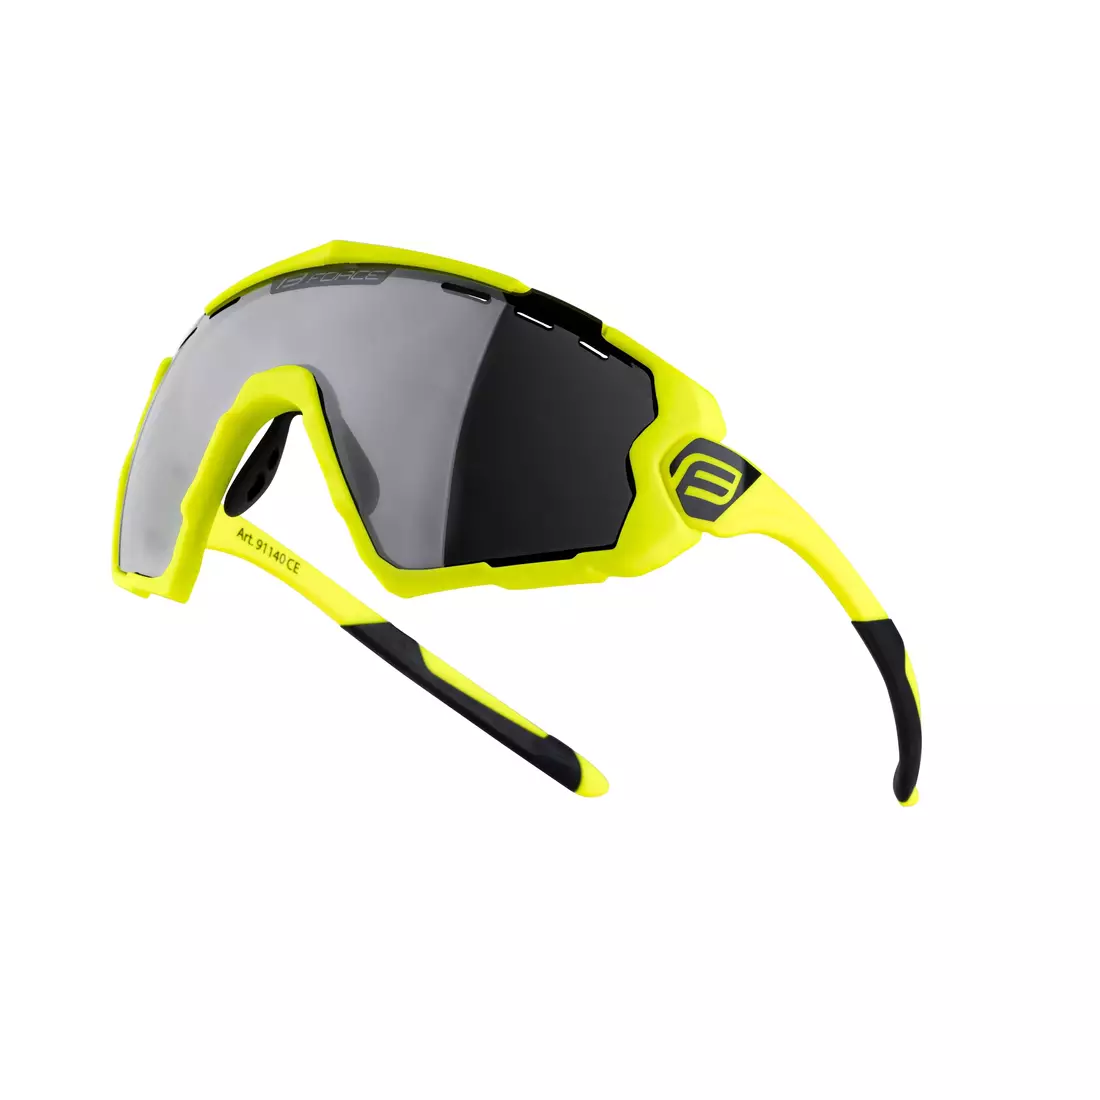 FORCE kerékpáros / sport szemüveg OMBRO fluo mat, 91140